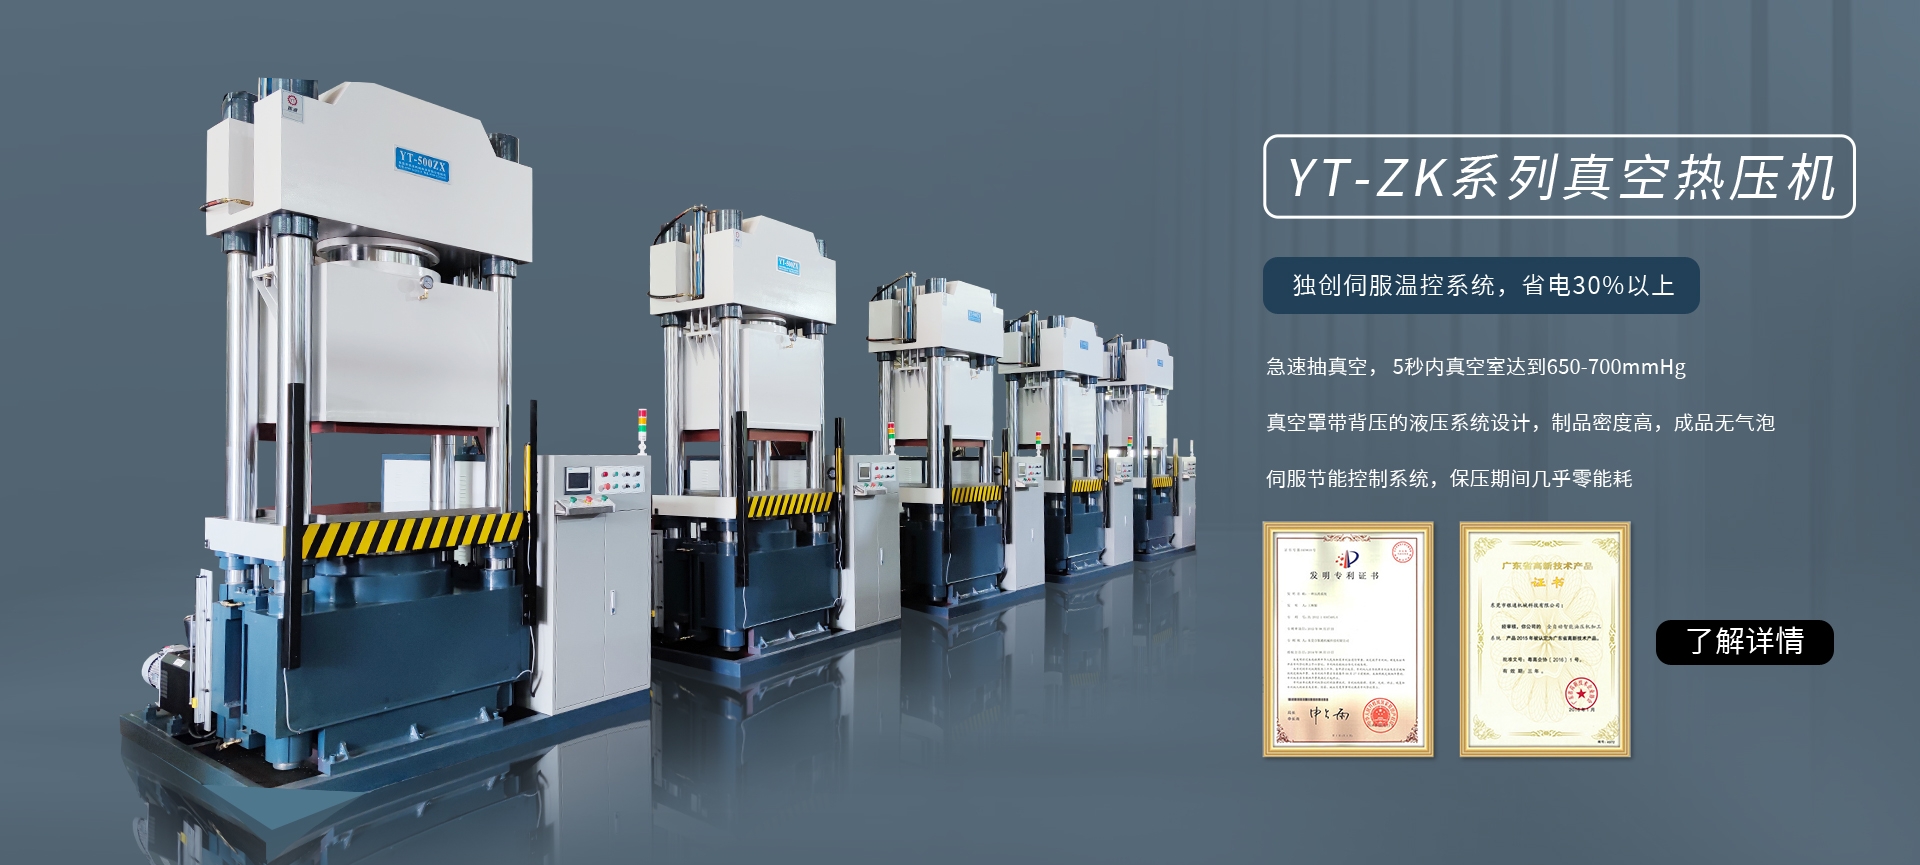 YT-ZK系列真空熱壓機